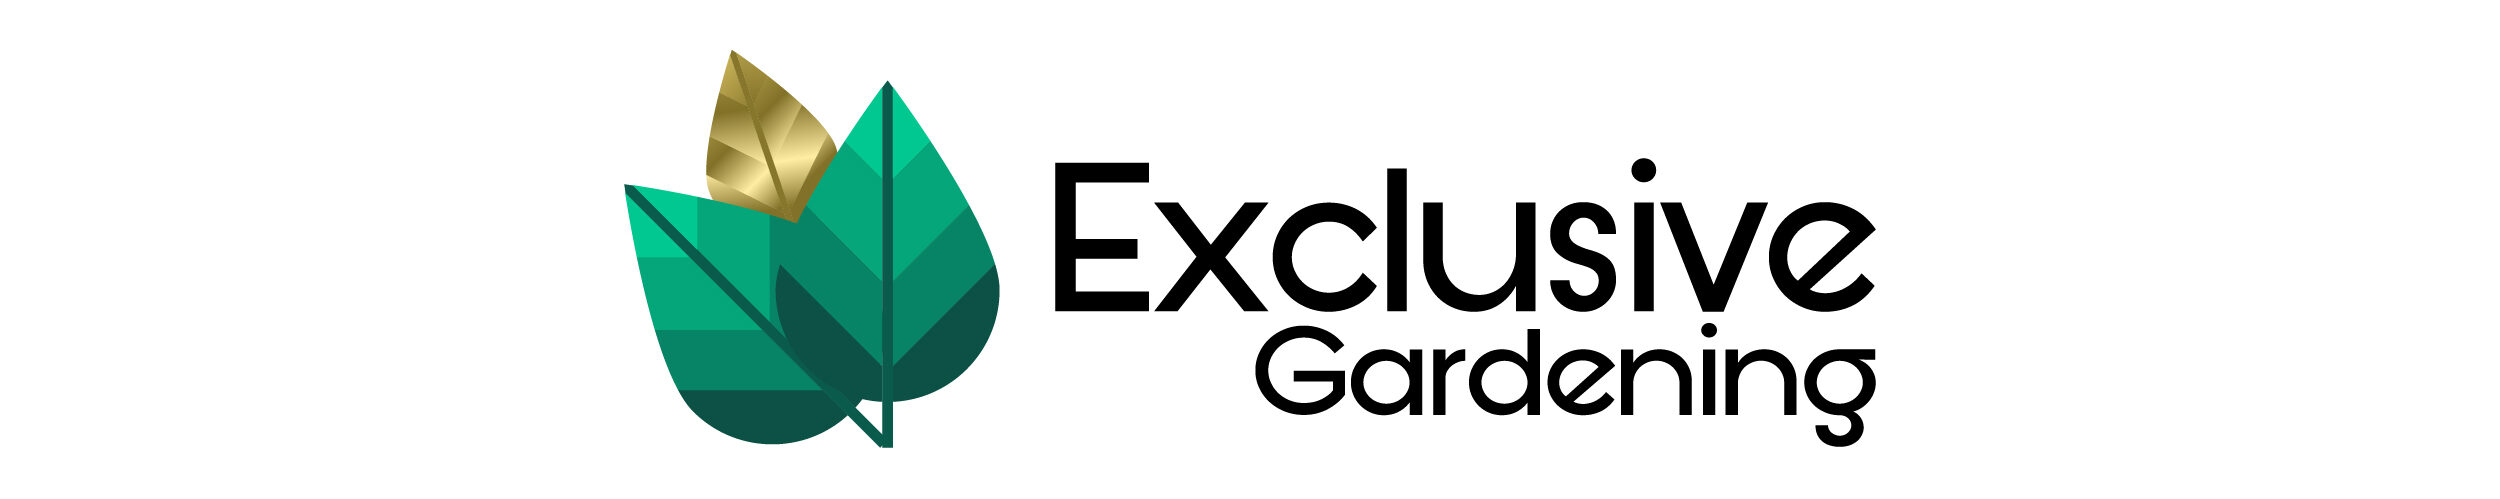 Exclusive Gardening